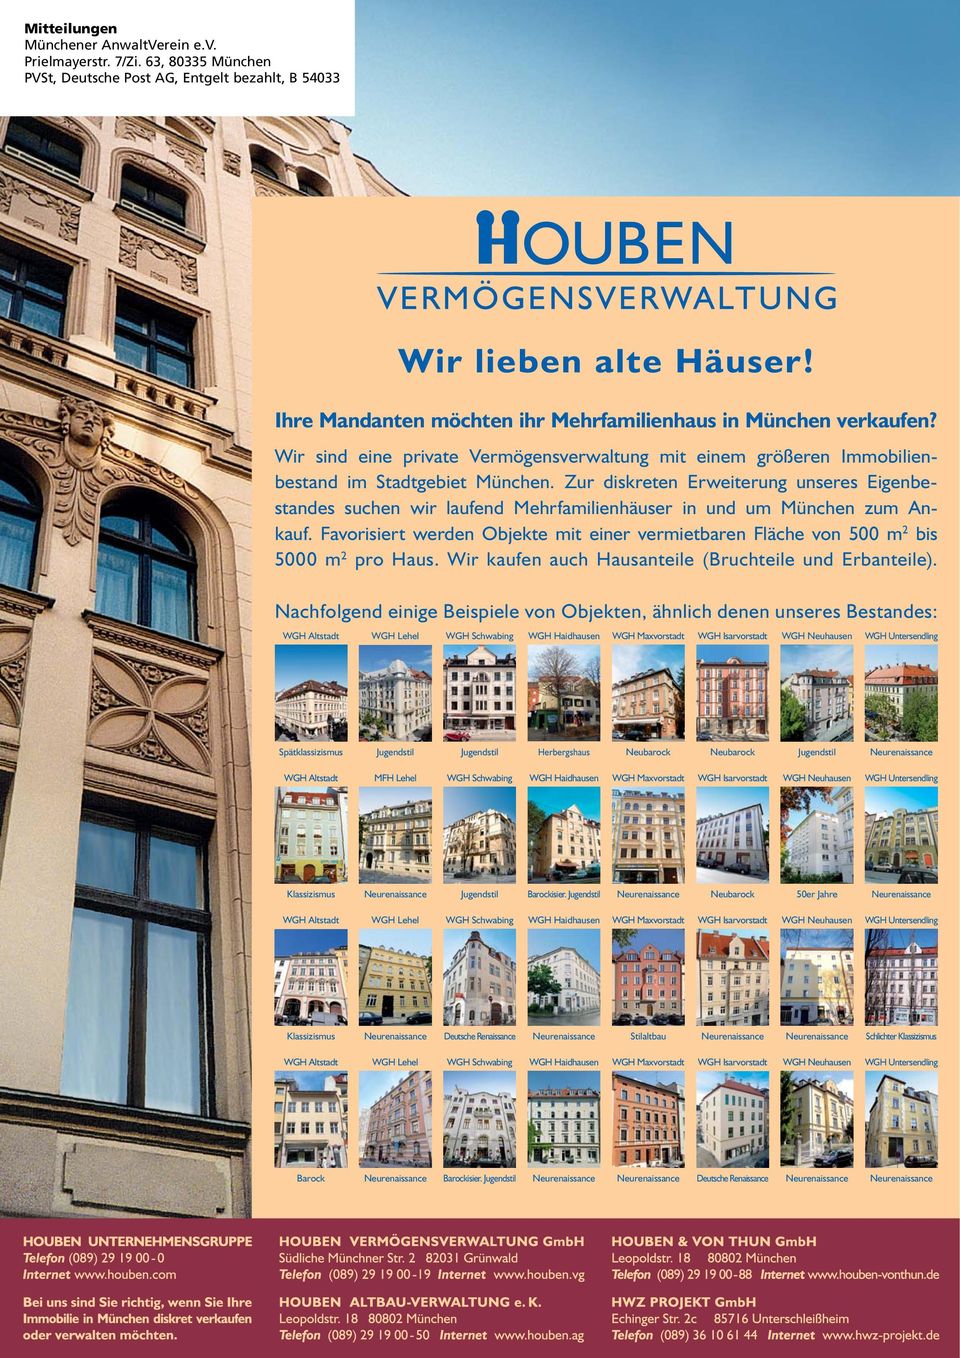 Zur diskreten Erweiterung unseres Eigenbestandes suchen wir laufend Mehrfamilienhäuser in und um München zum Ankauf.